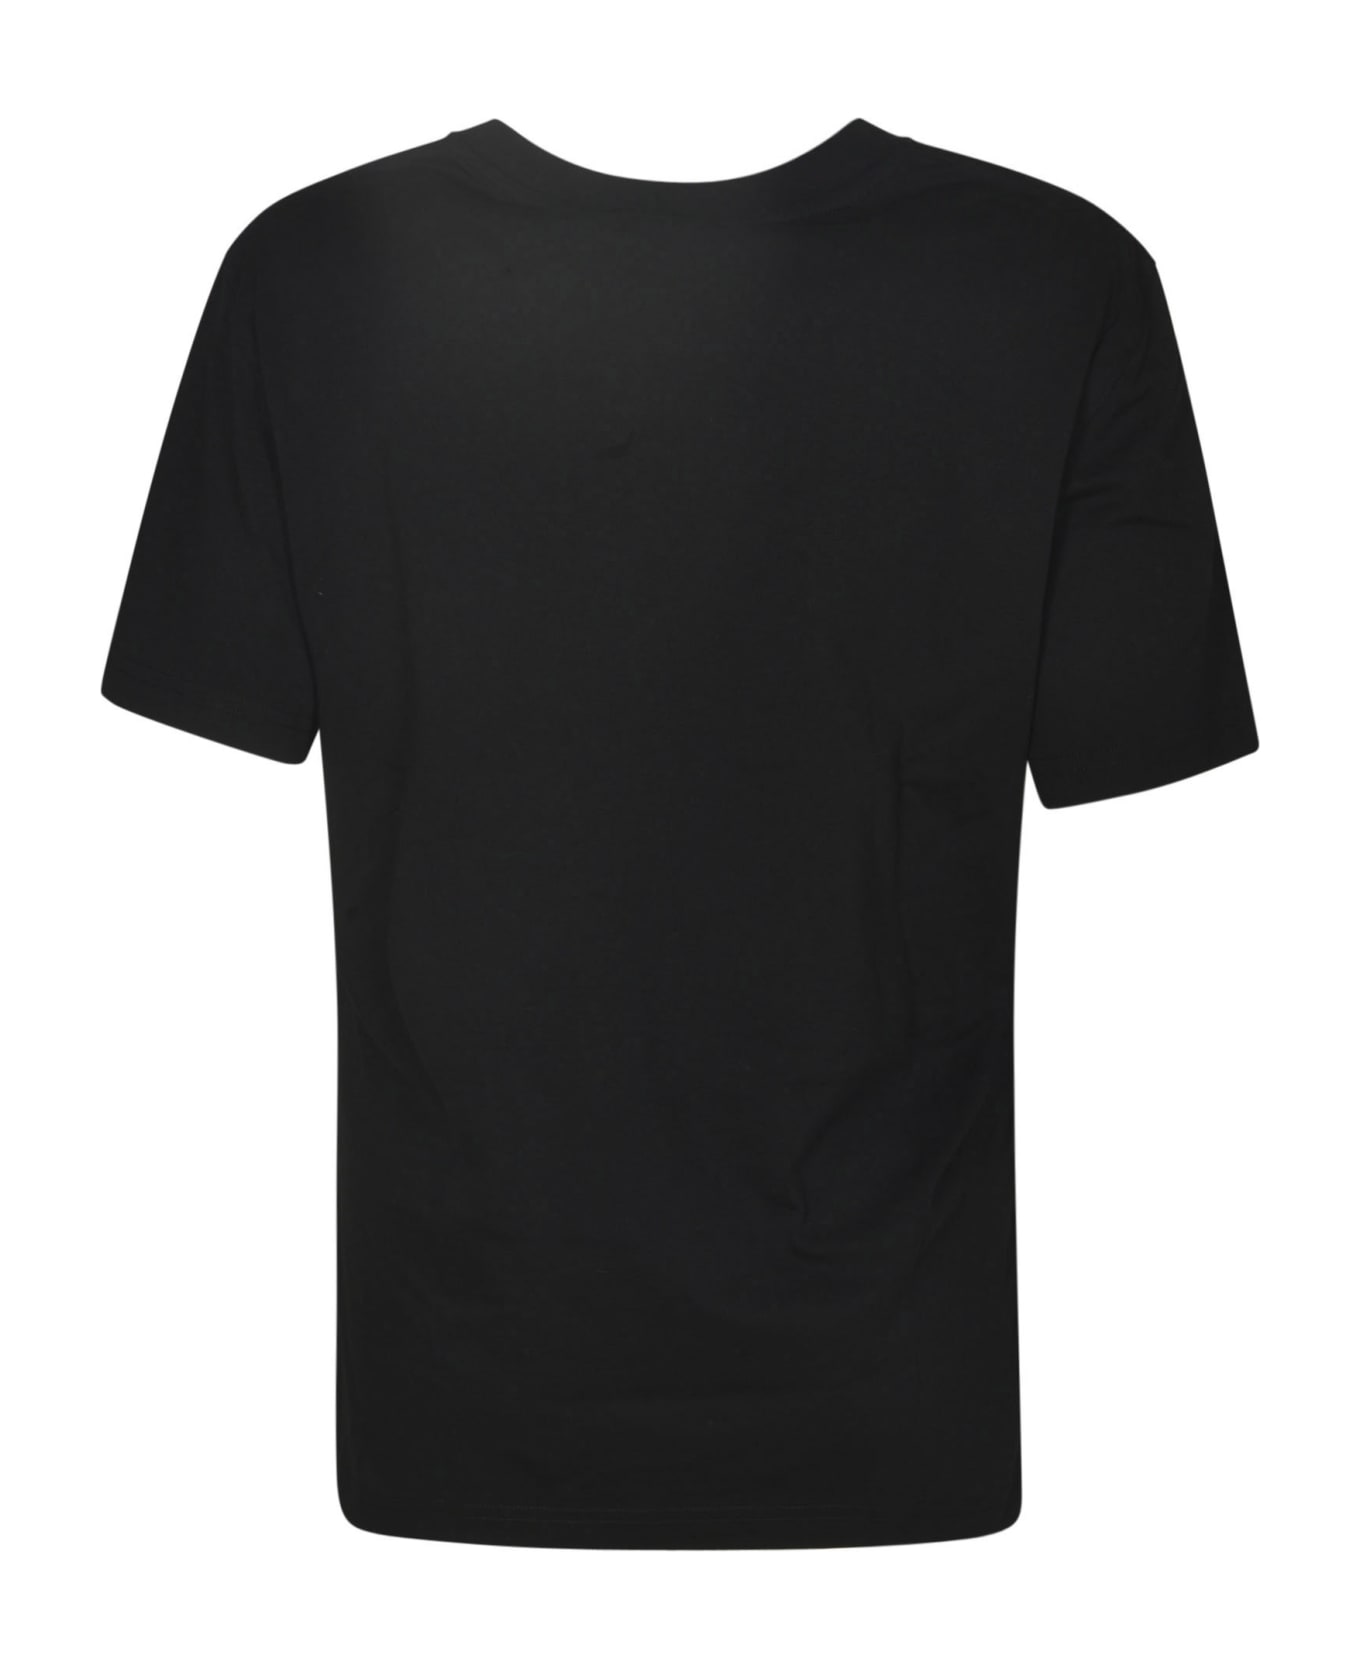 Moschino 40 Years Of Love T-shirt - Black